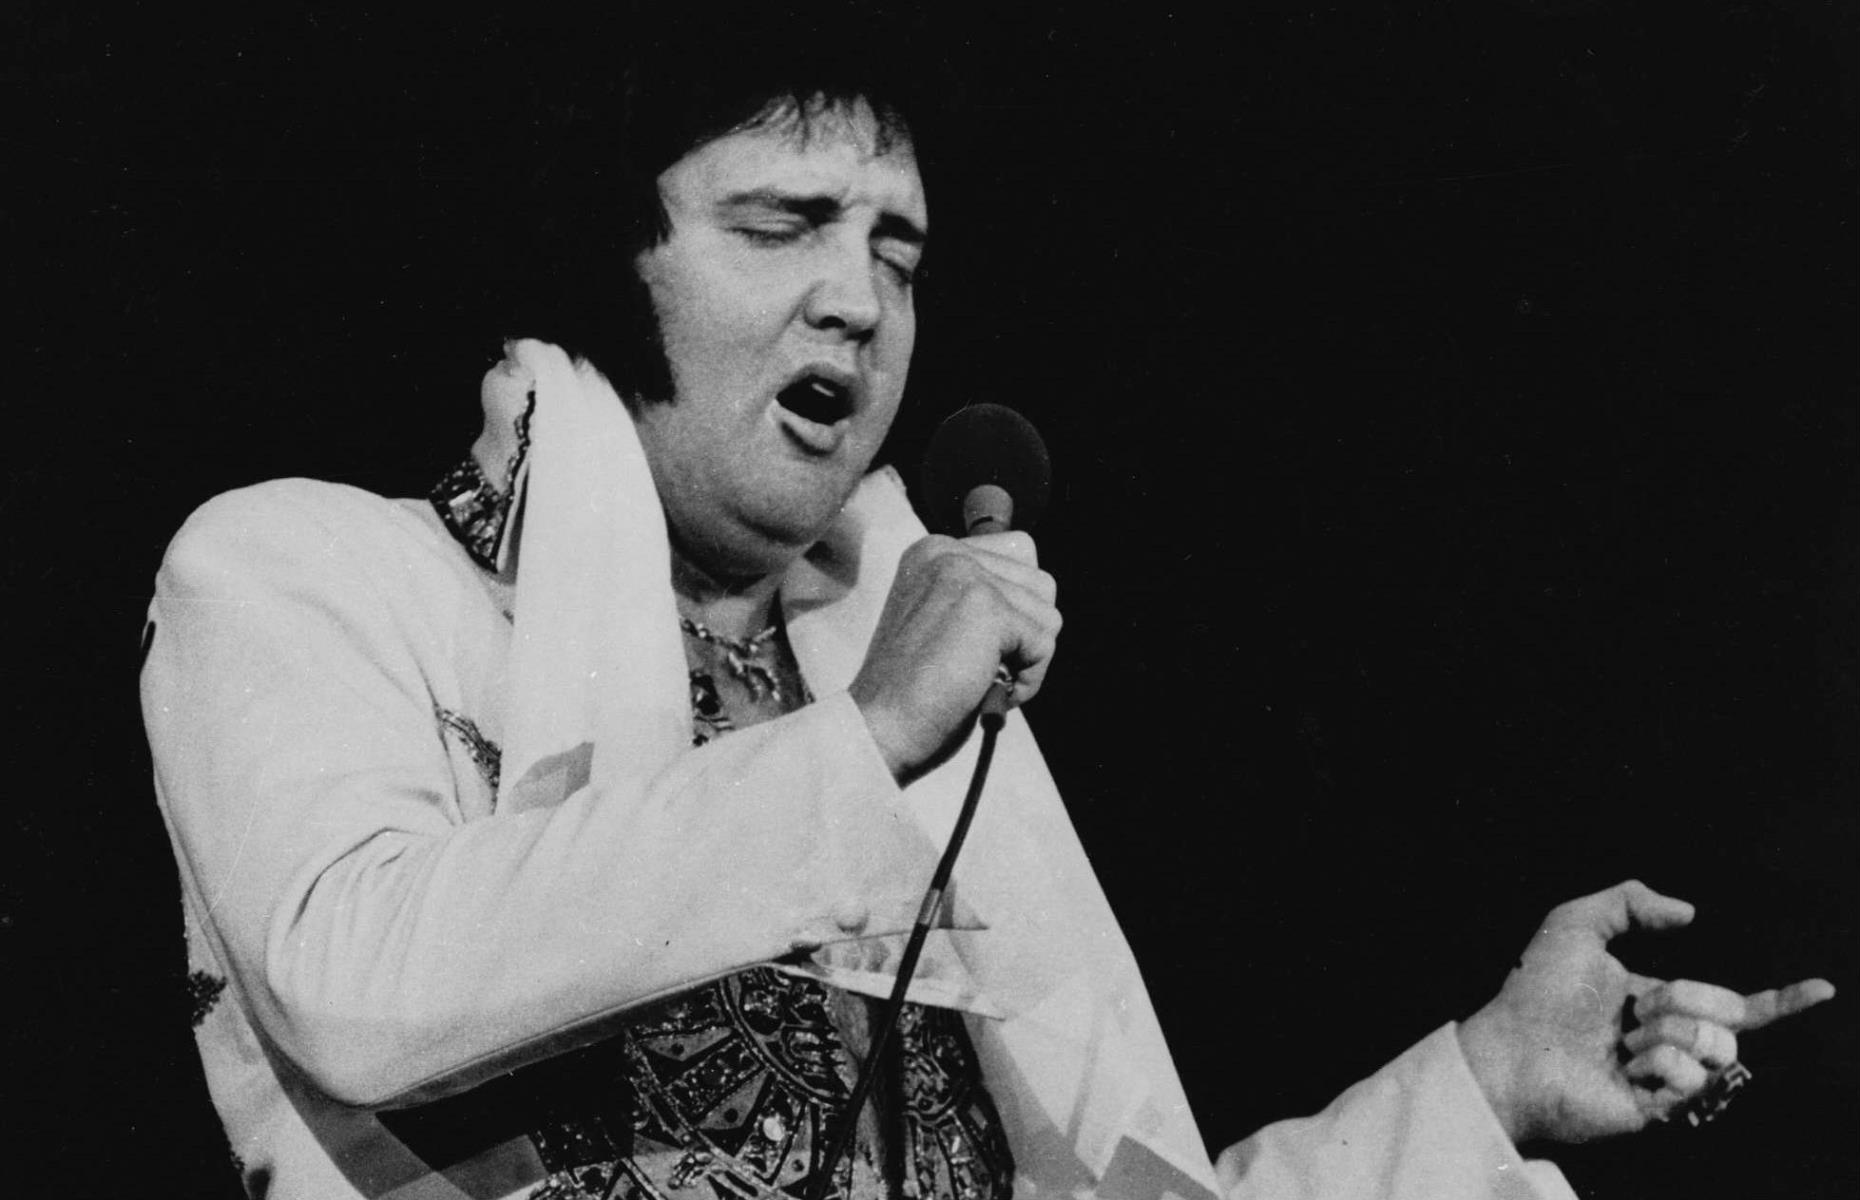 1977: Elvis Presley dies